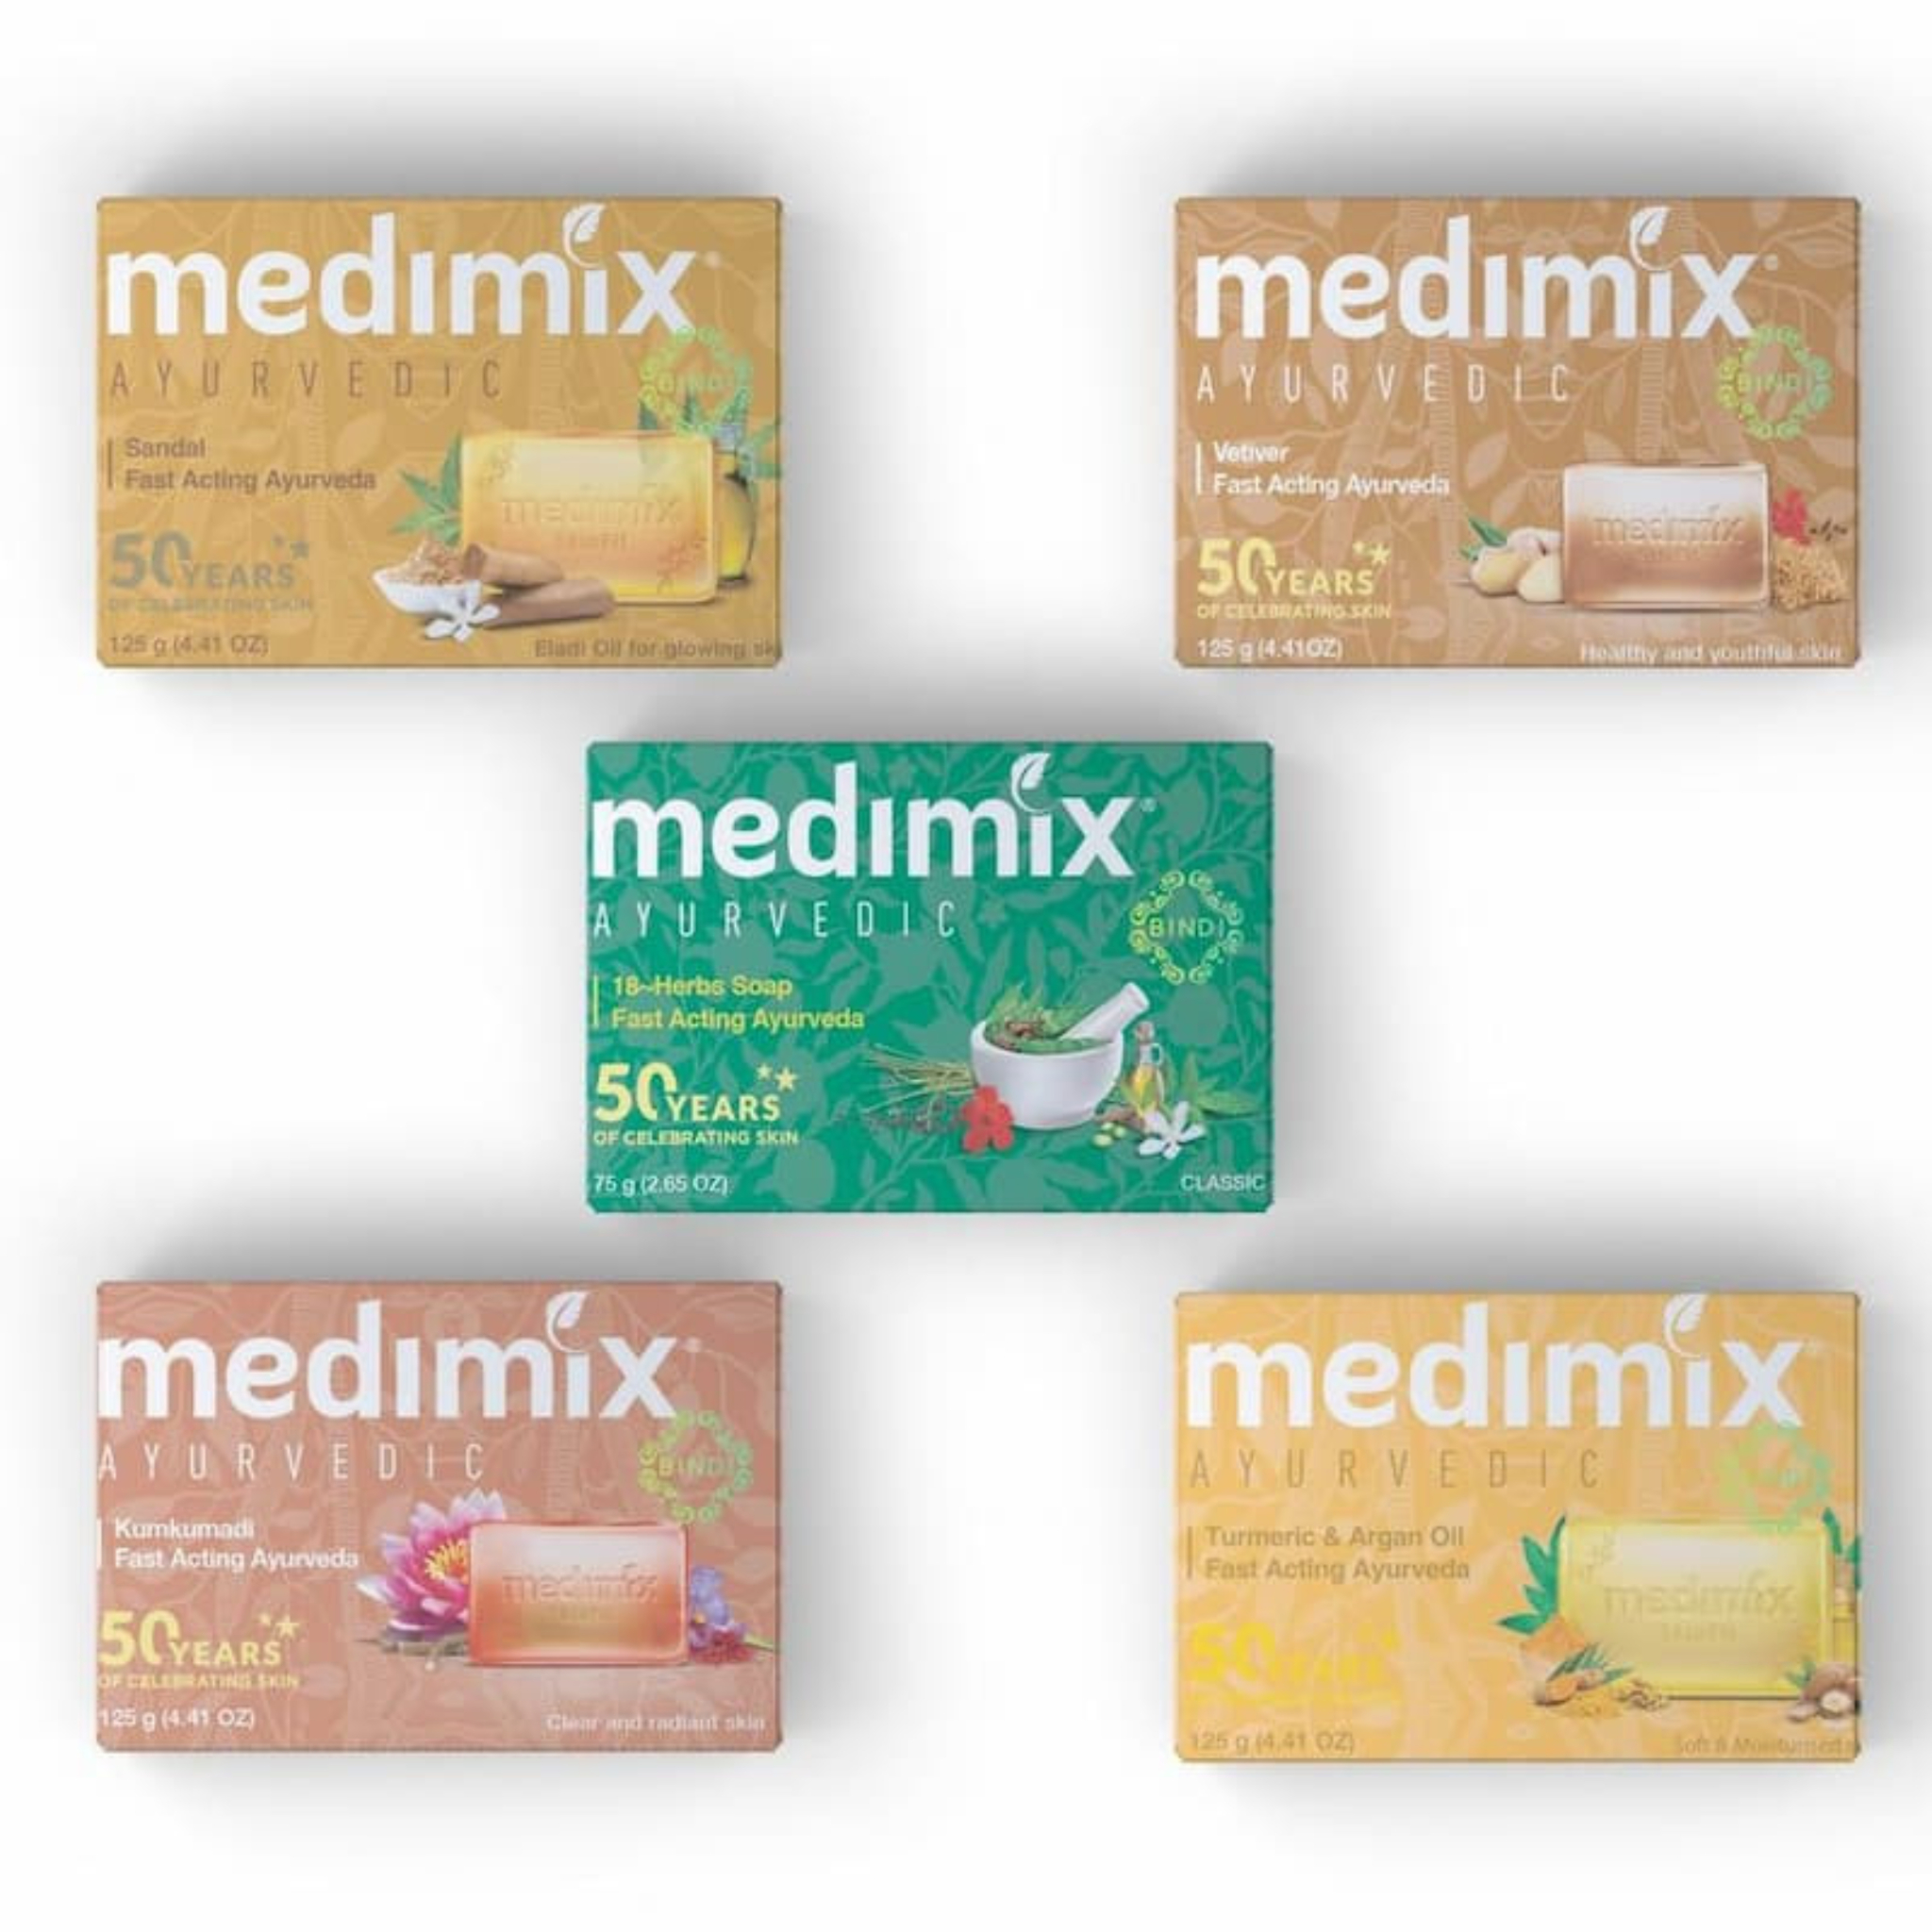 Xà phòng medimix giúp làm sạch da sâu và ngăn ngừa mụn.